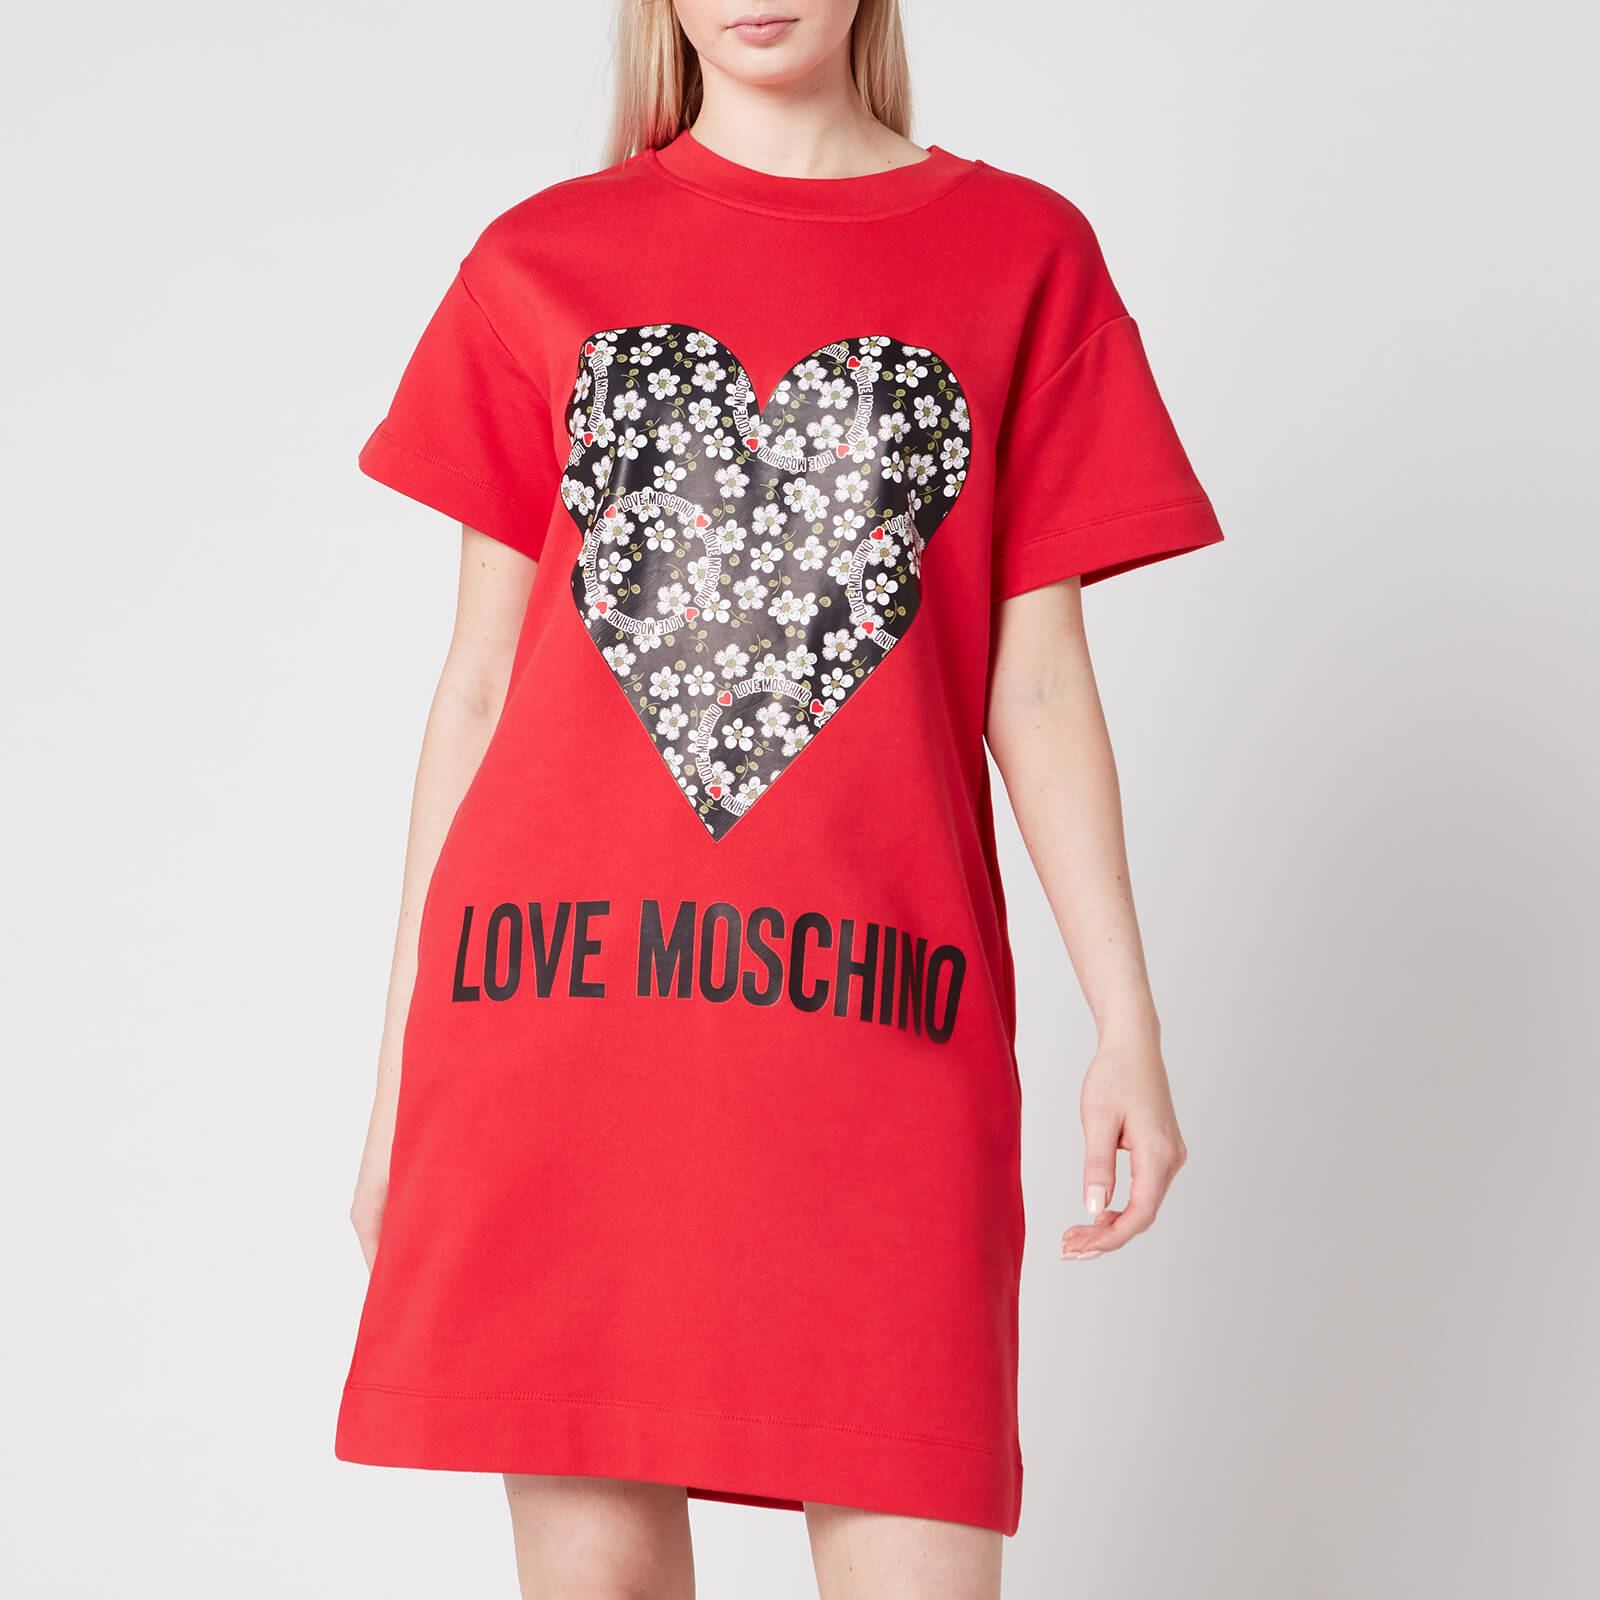 love moschino shirt dress